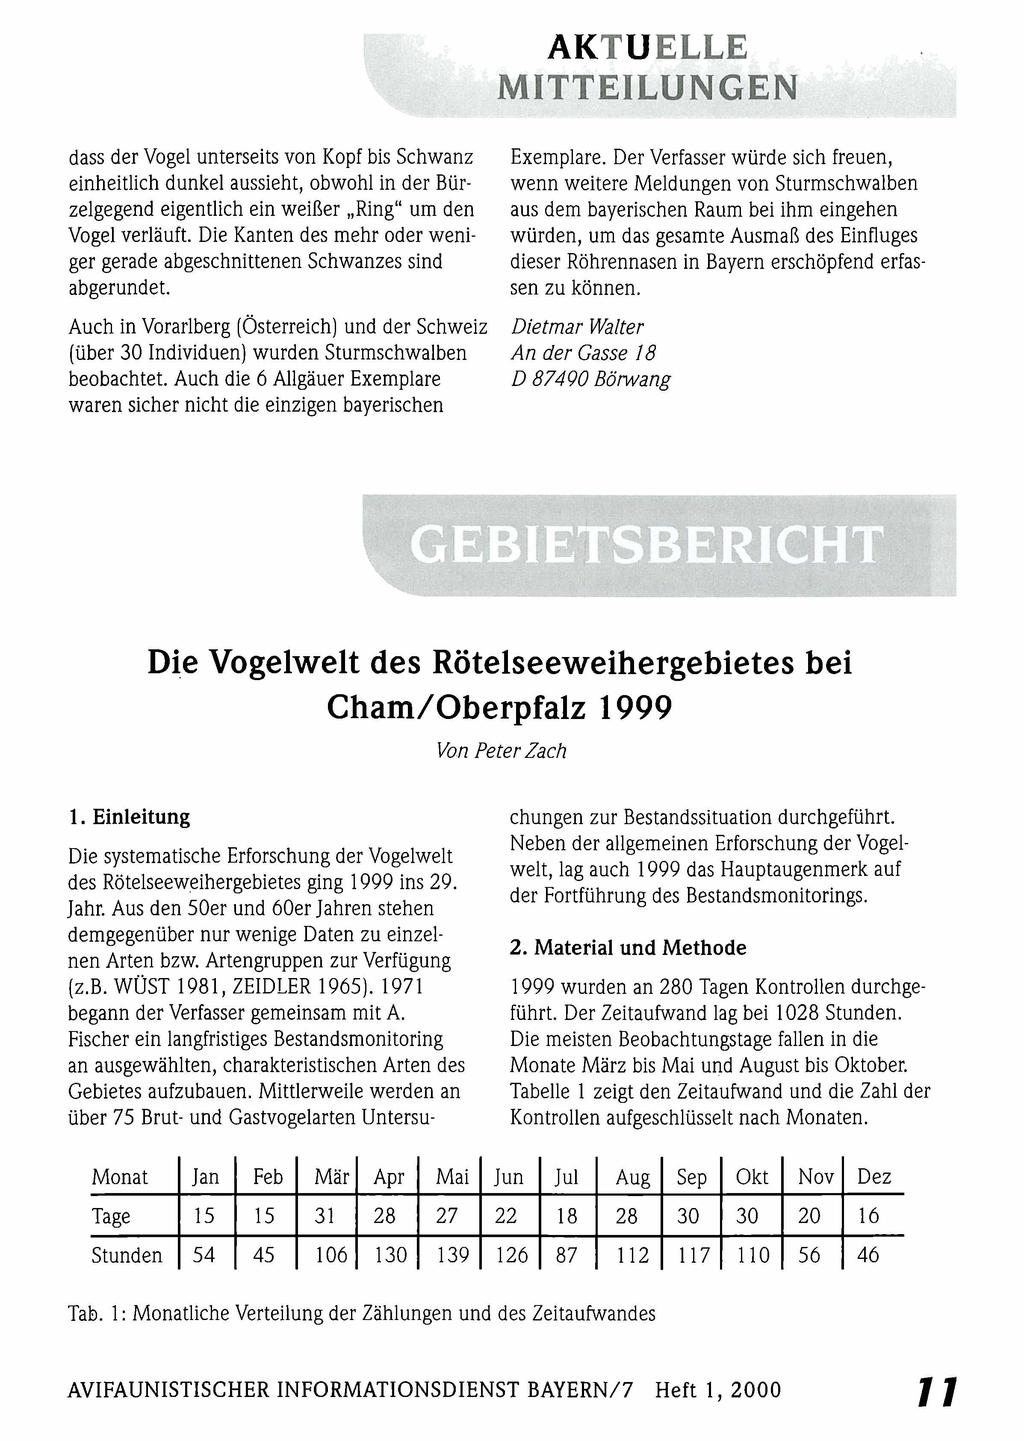 AKTUELLE MITTEILUNGEN Ornithologische Gesellschaft Bayern, download unter www.biologiezentrum.